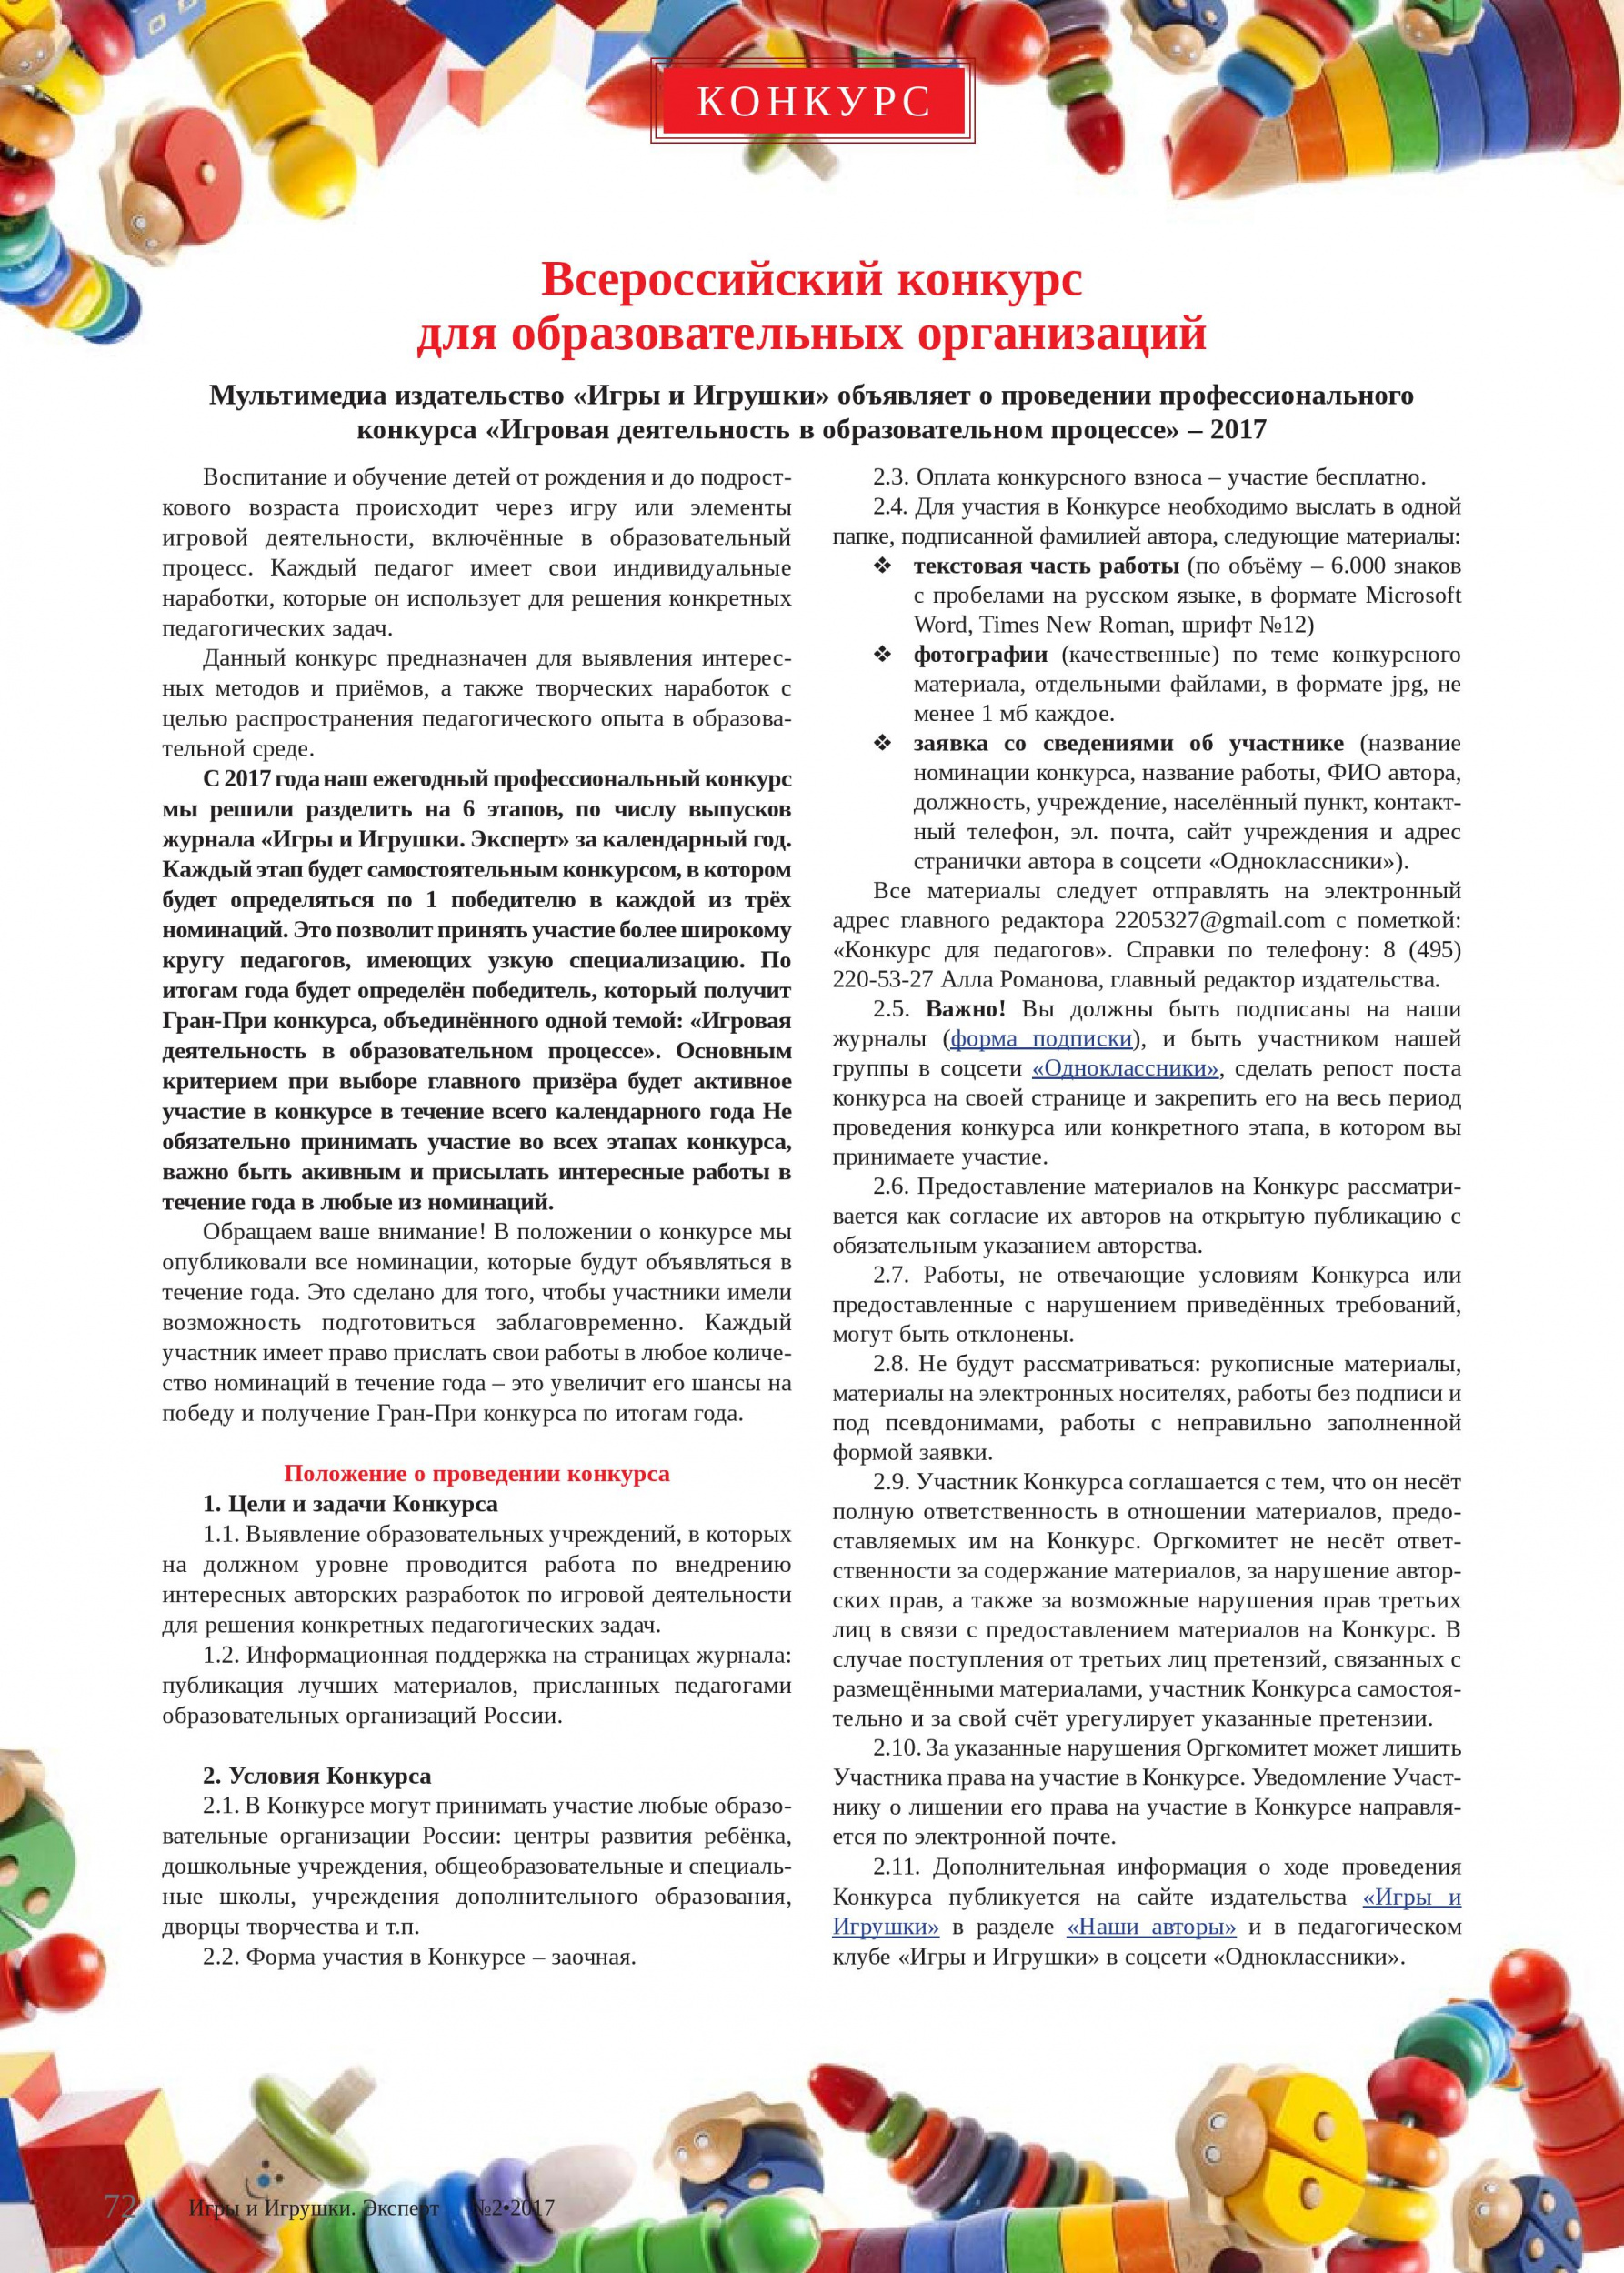 Всероссийский конкурс для образовательных организаций